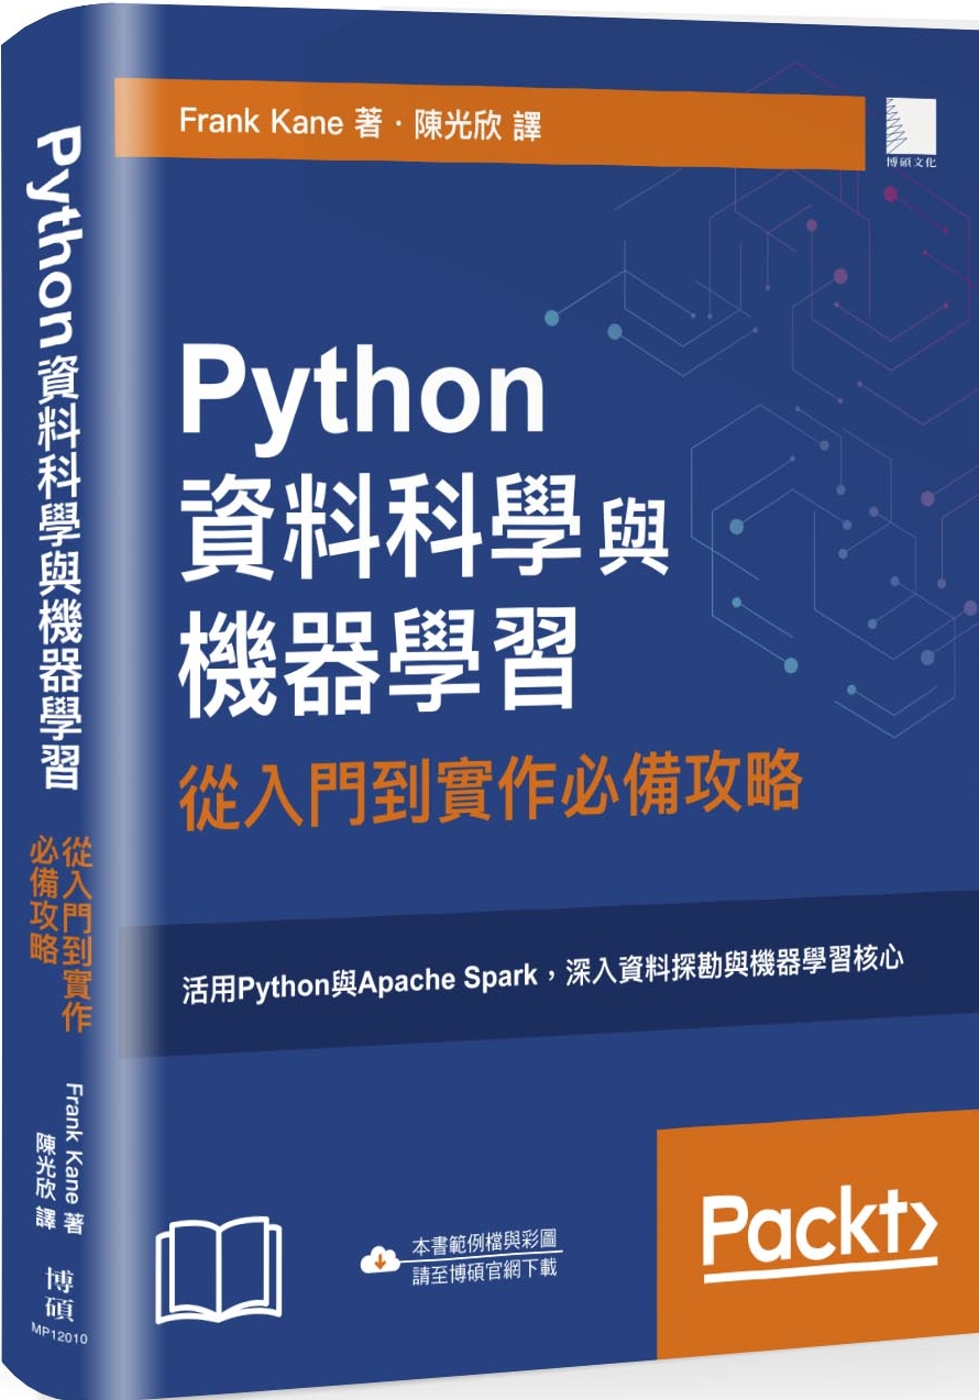 Python資料科學與機器學習：從入門到實作必備攻略